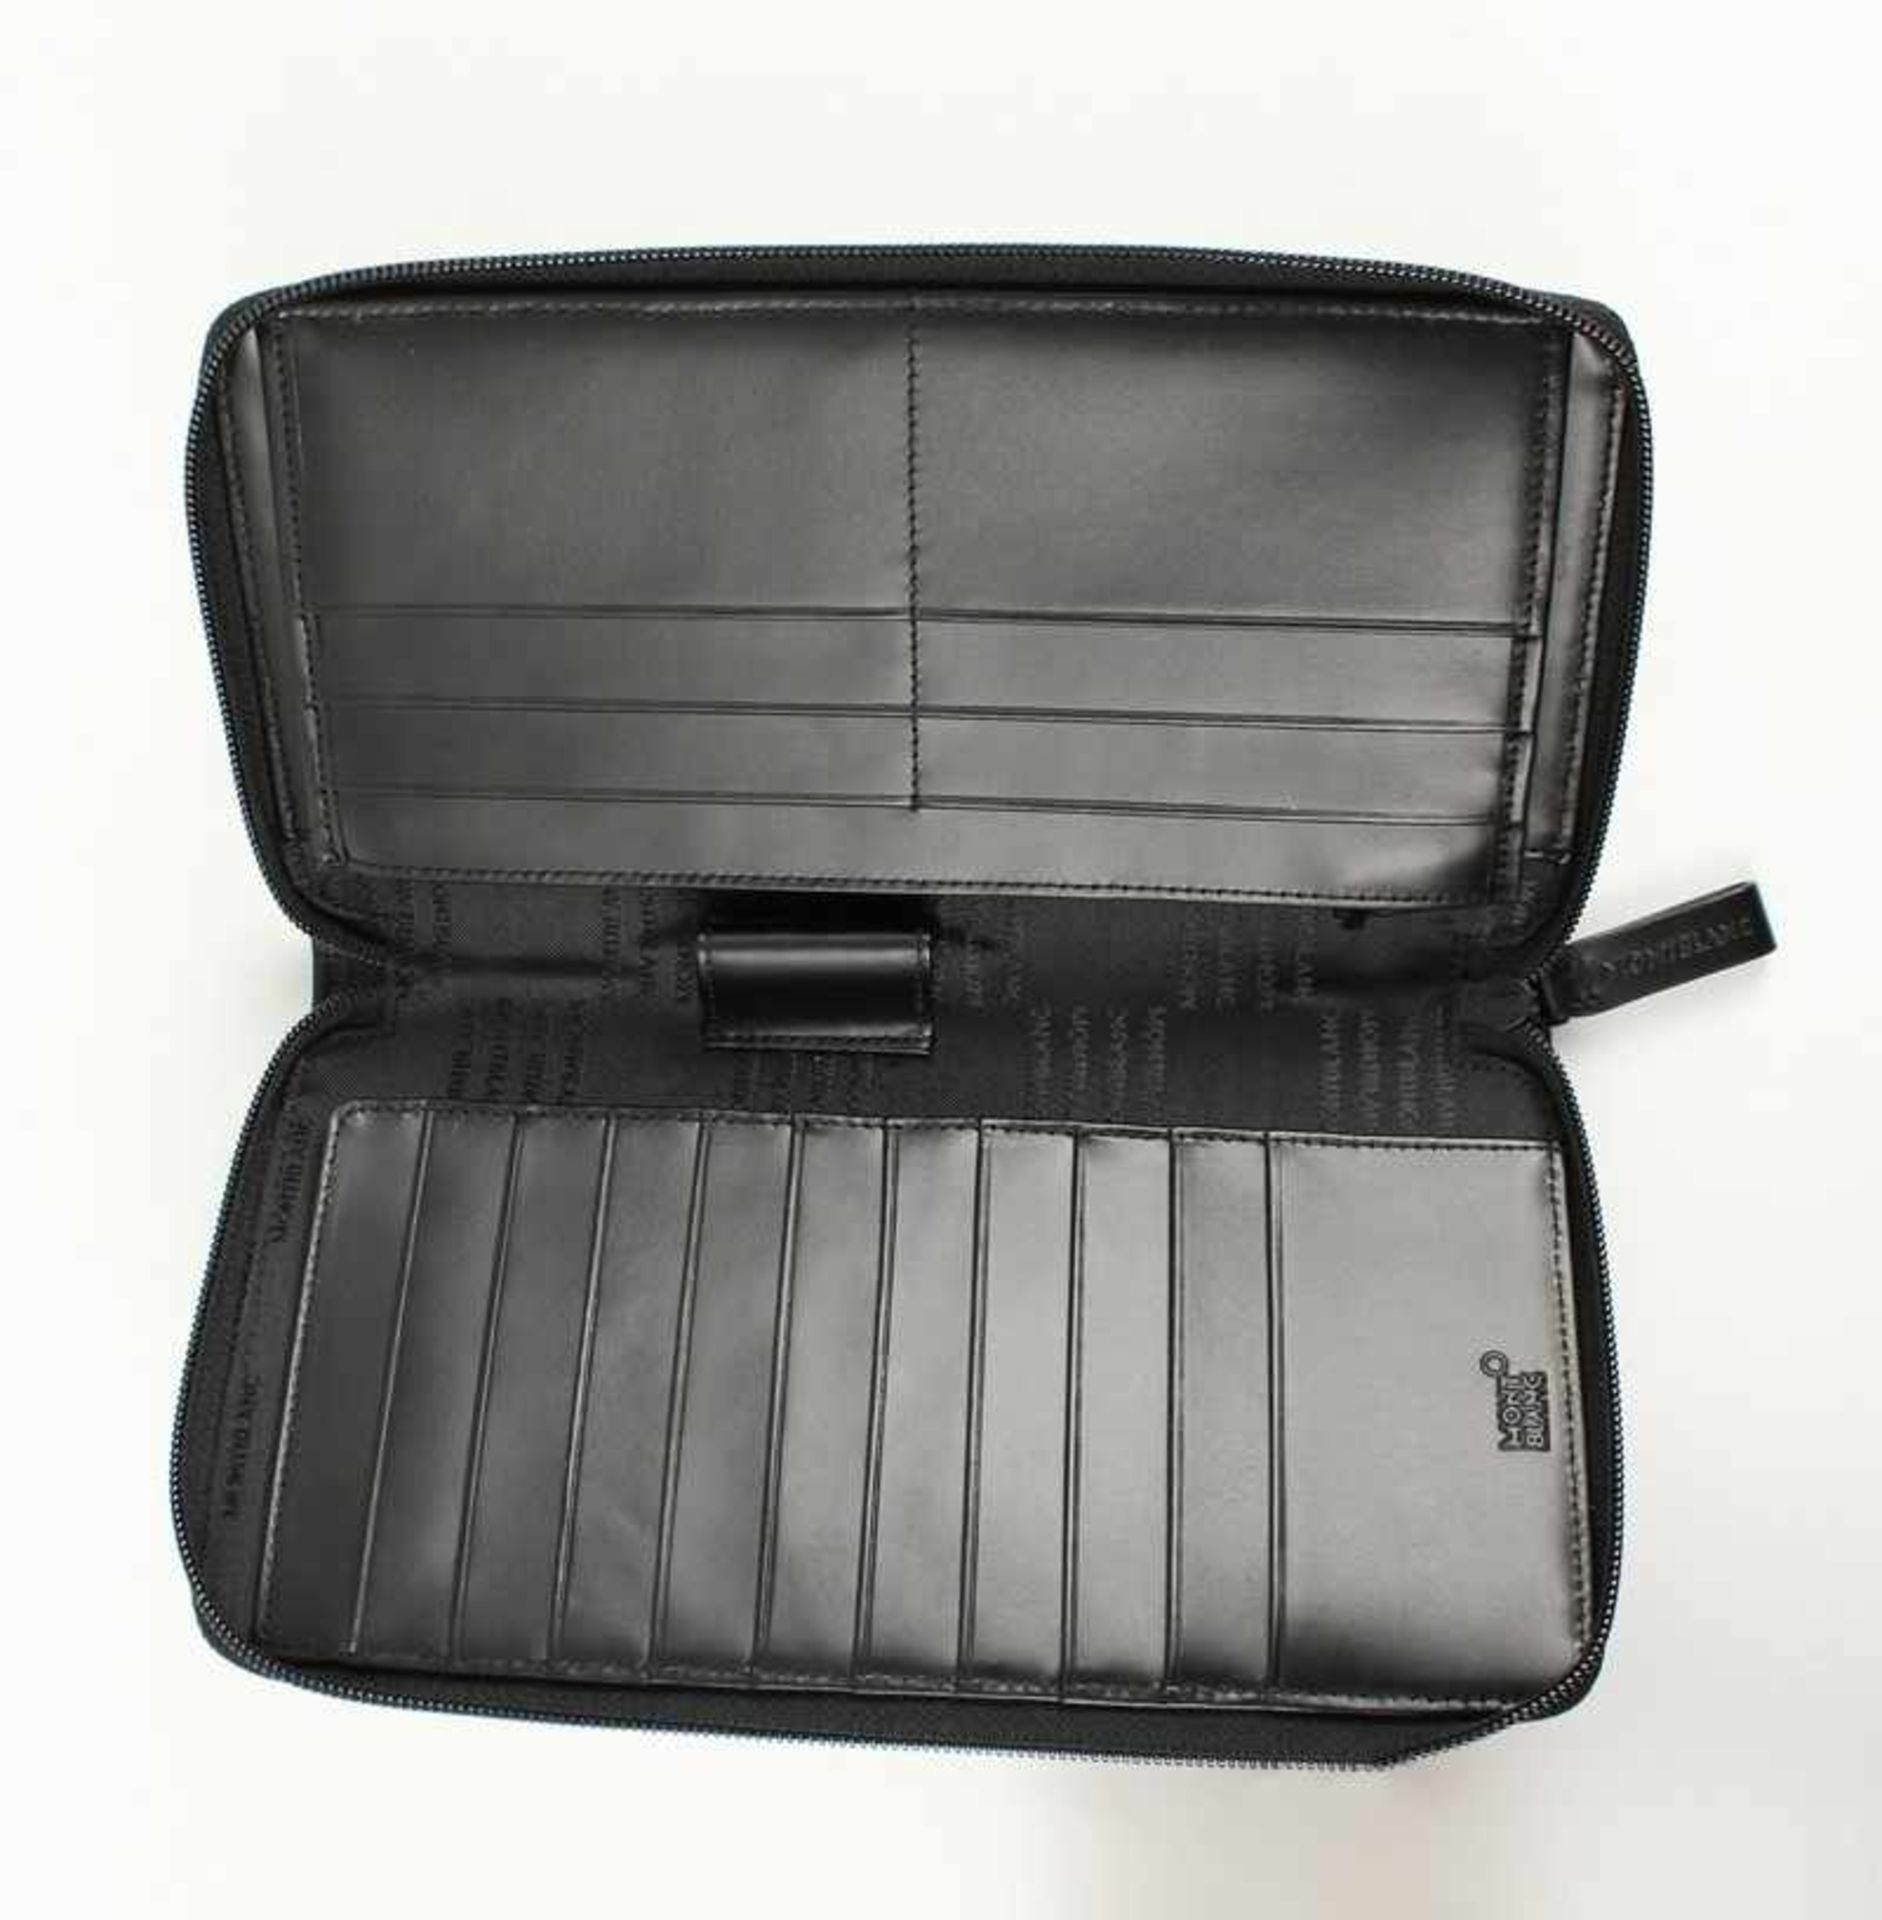 Montblanc - Reisebrieftascheexklusive große Brieftasche, schwarzes Leder & Nylon, Reißverschluss,